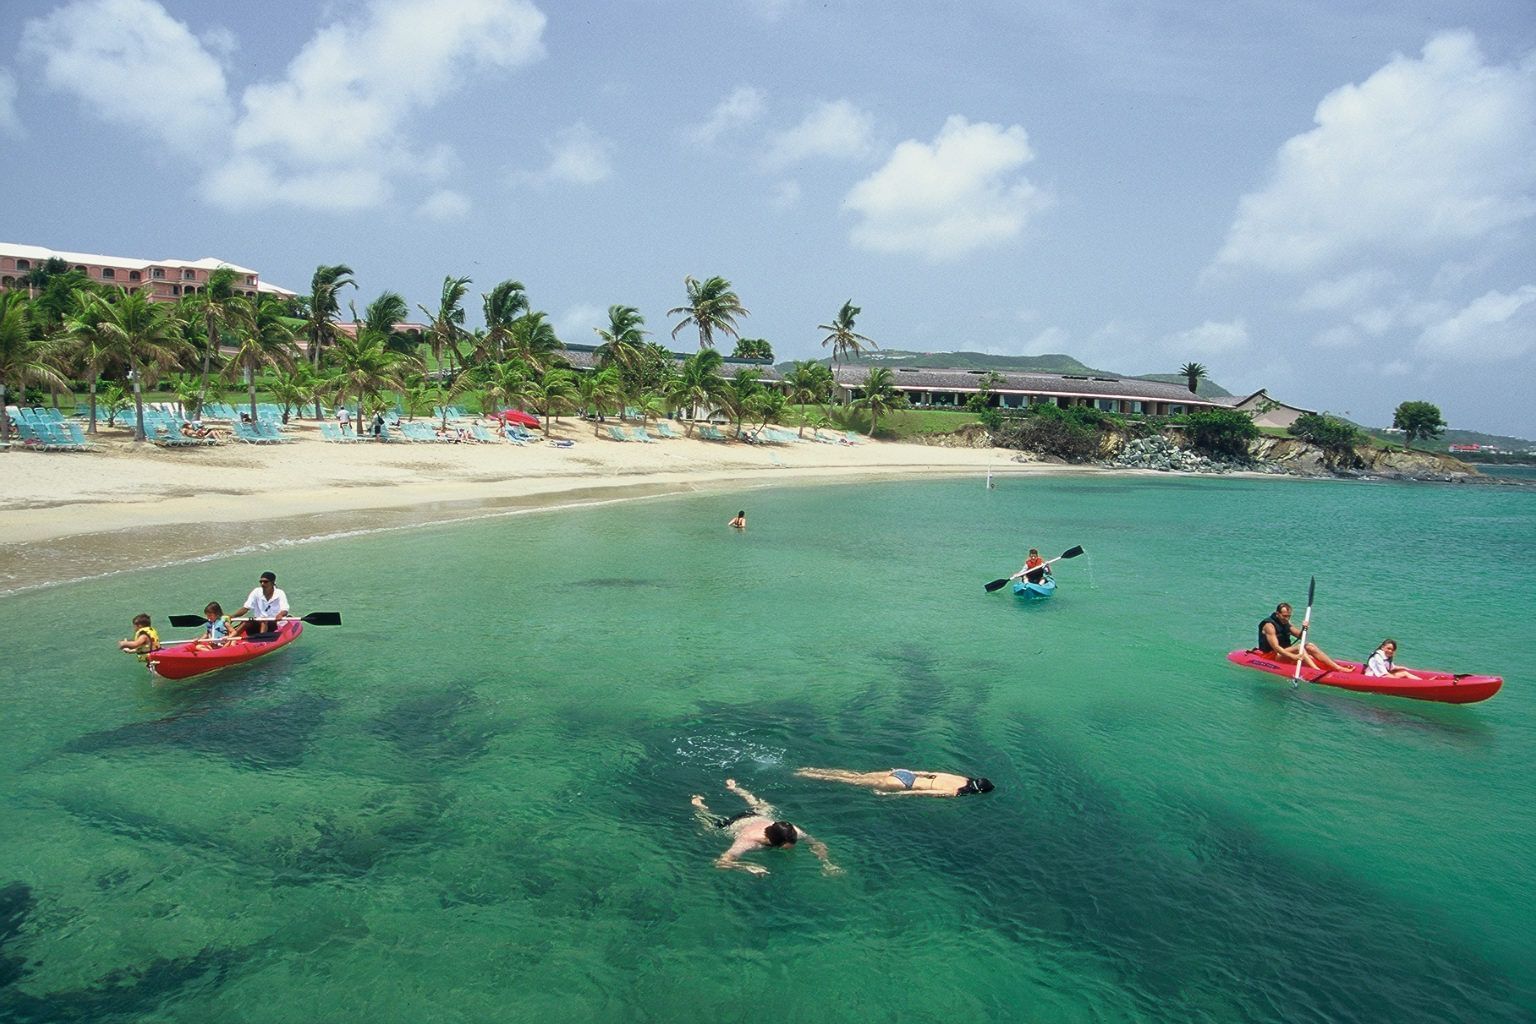 Kayakers & snorkelers at Mermaid Beach near The Buccaneer Resort St. Croix